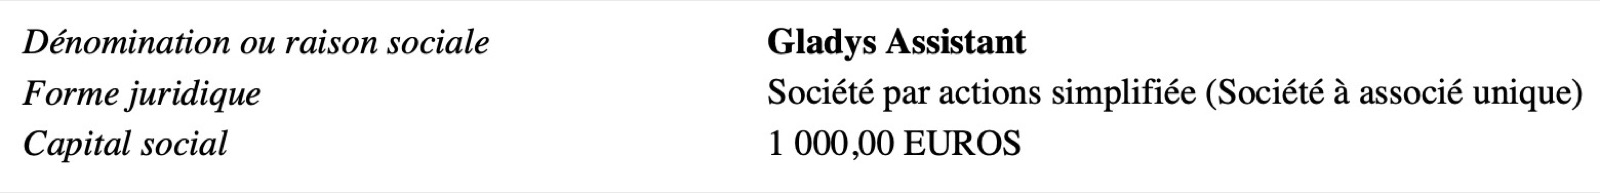 Gladys Assistant SAS